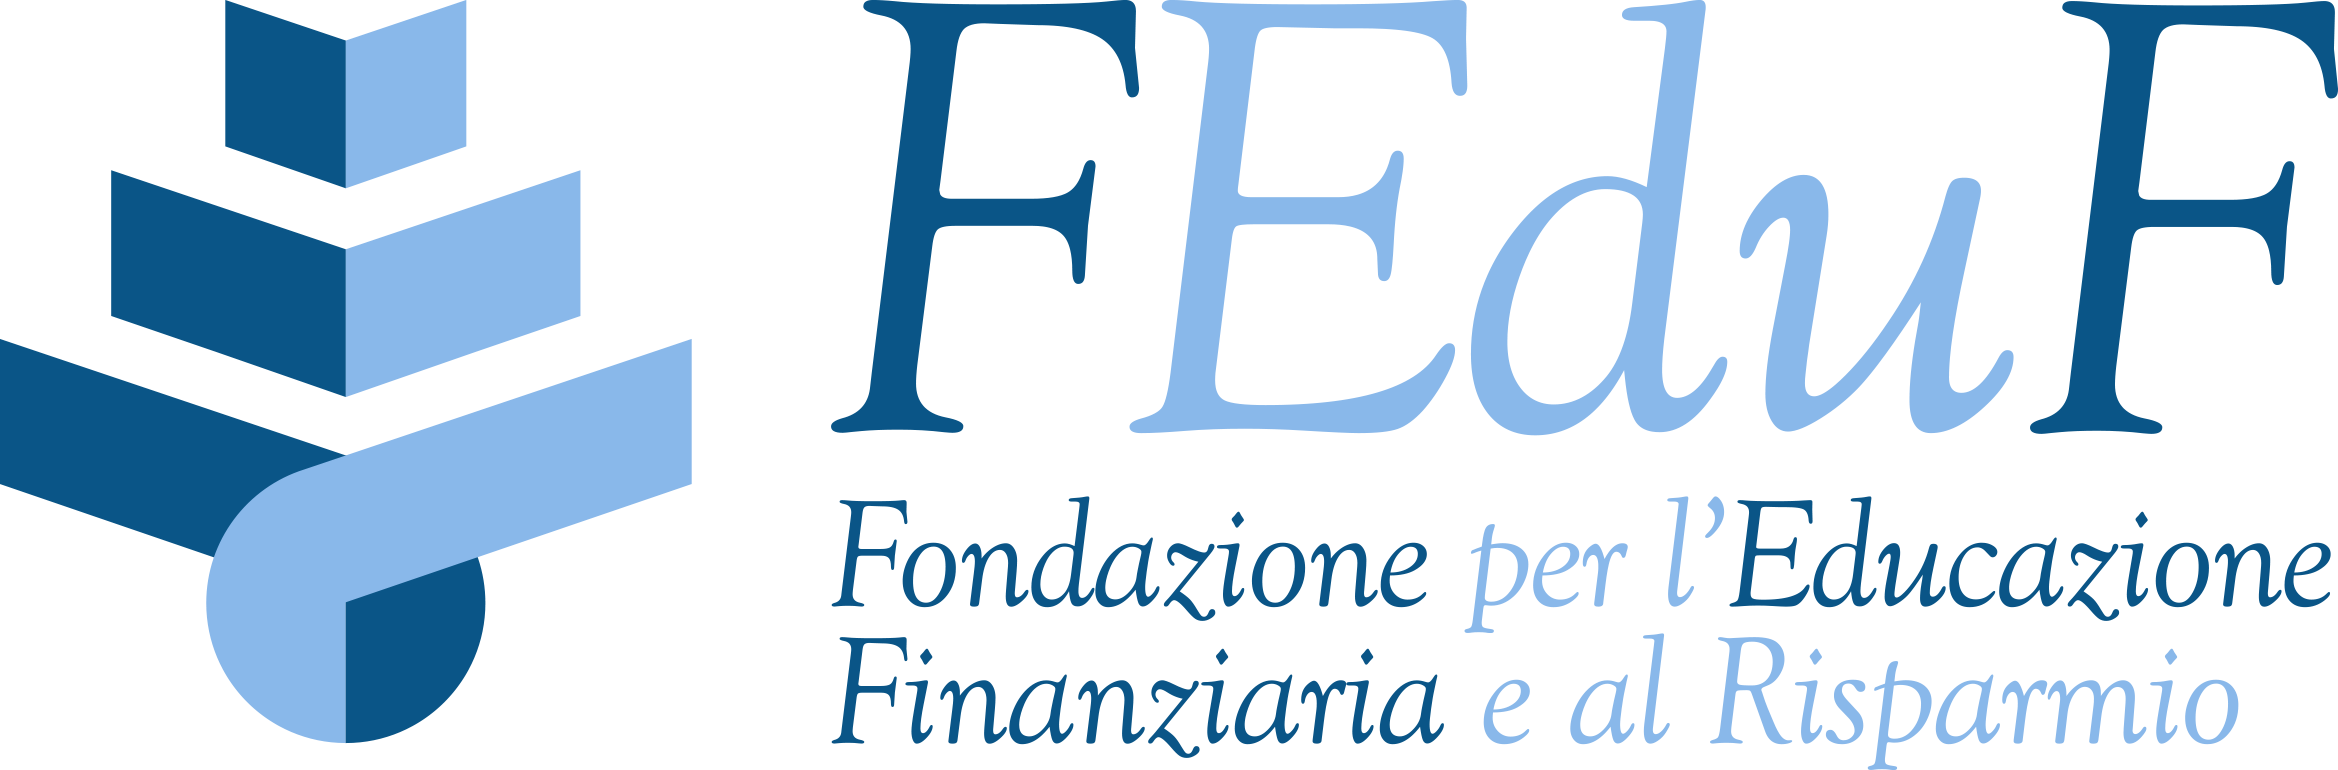 Logo FEDUF - Fondazione per l'Educazione Finanziaria e al Risparmio